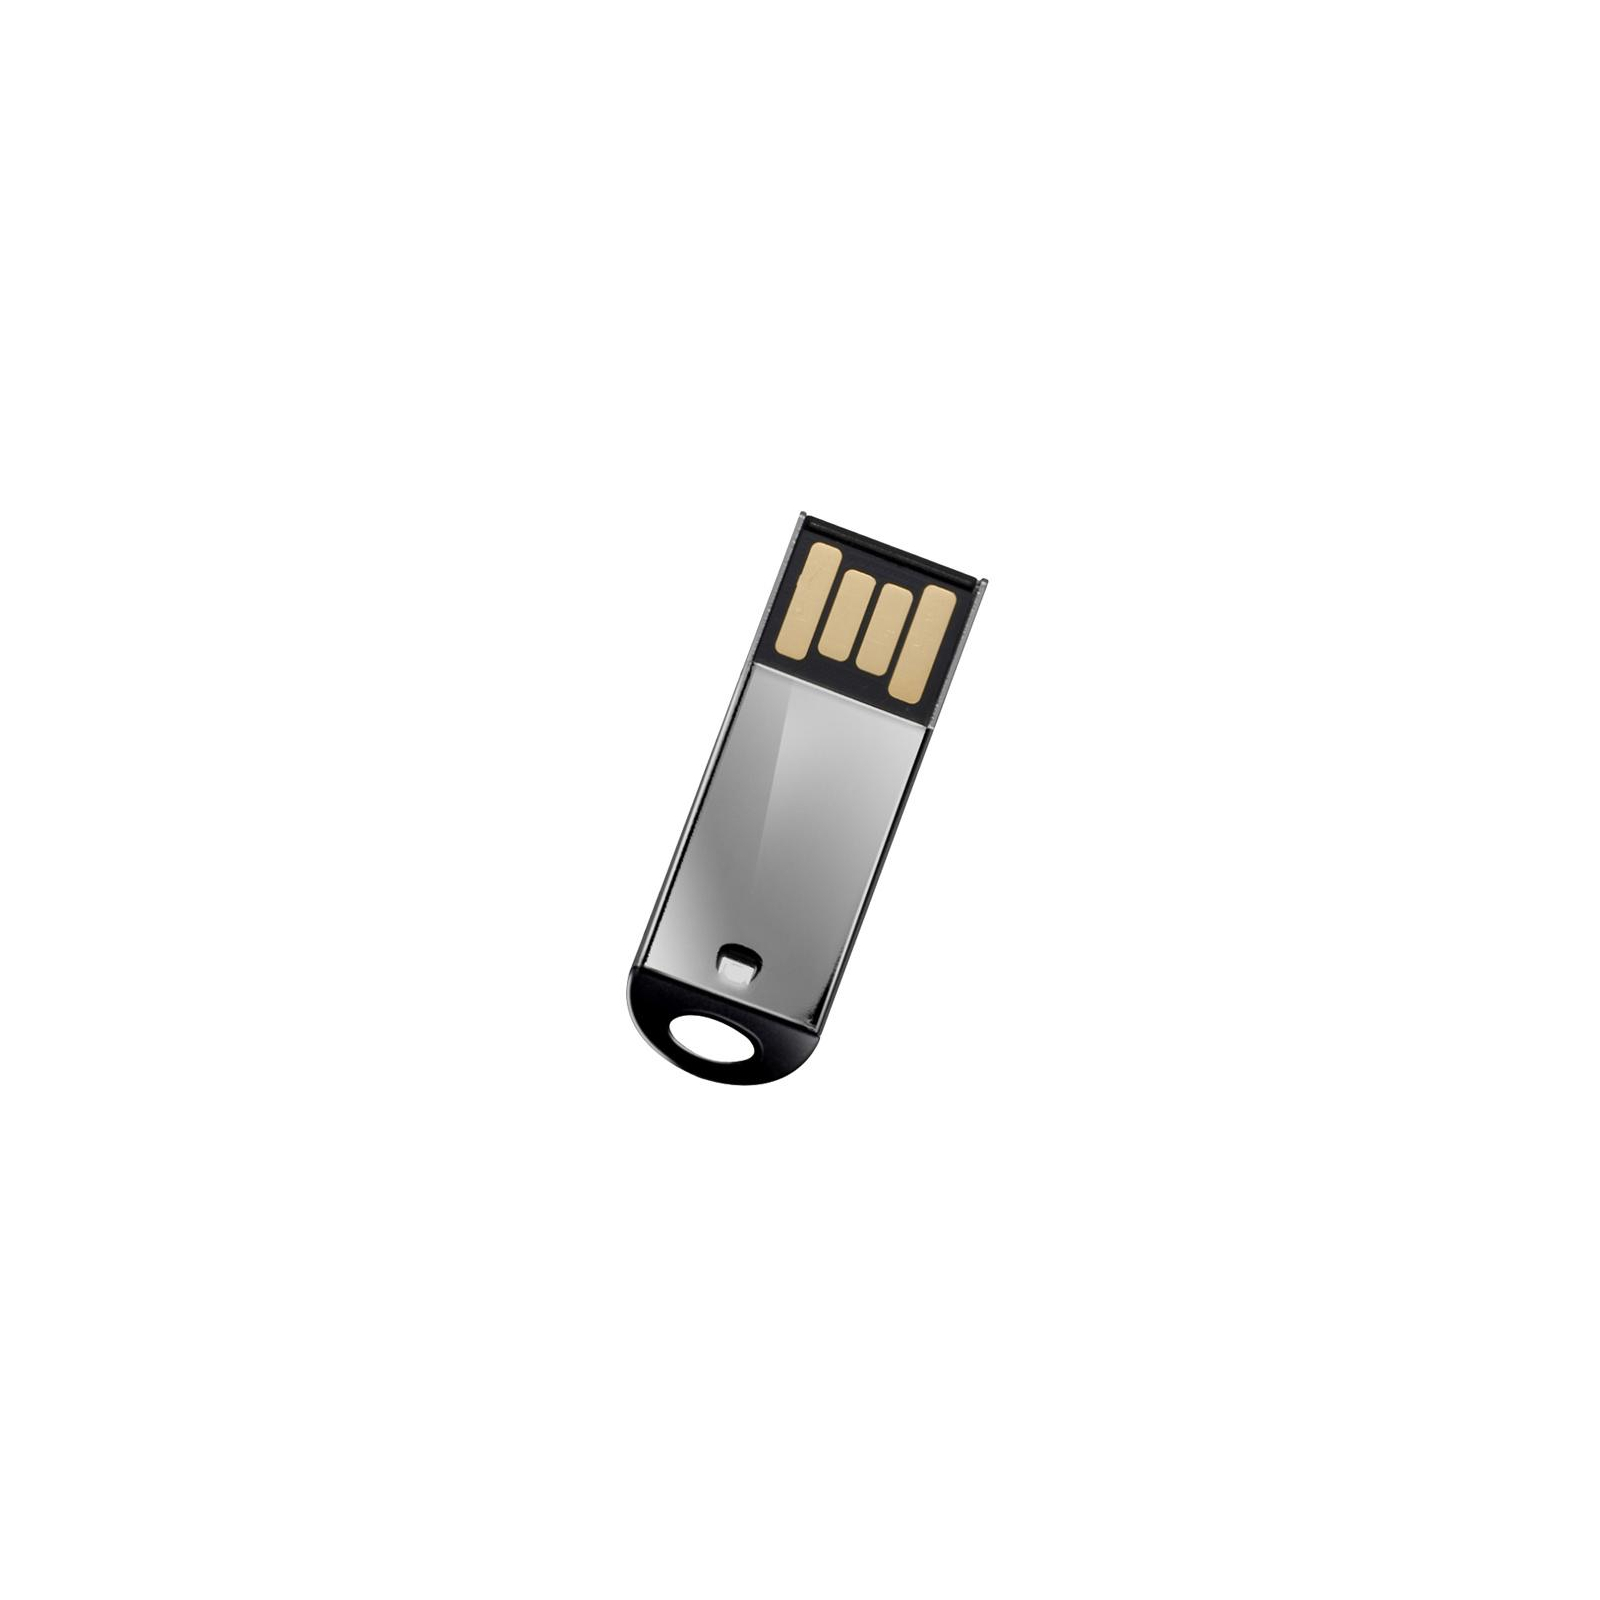 USB флеш накопитель Silicon Power 8Gb Touch 830 black santa edition (SP008GBUF2830V1K-LE) изображение 2